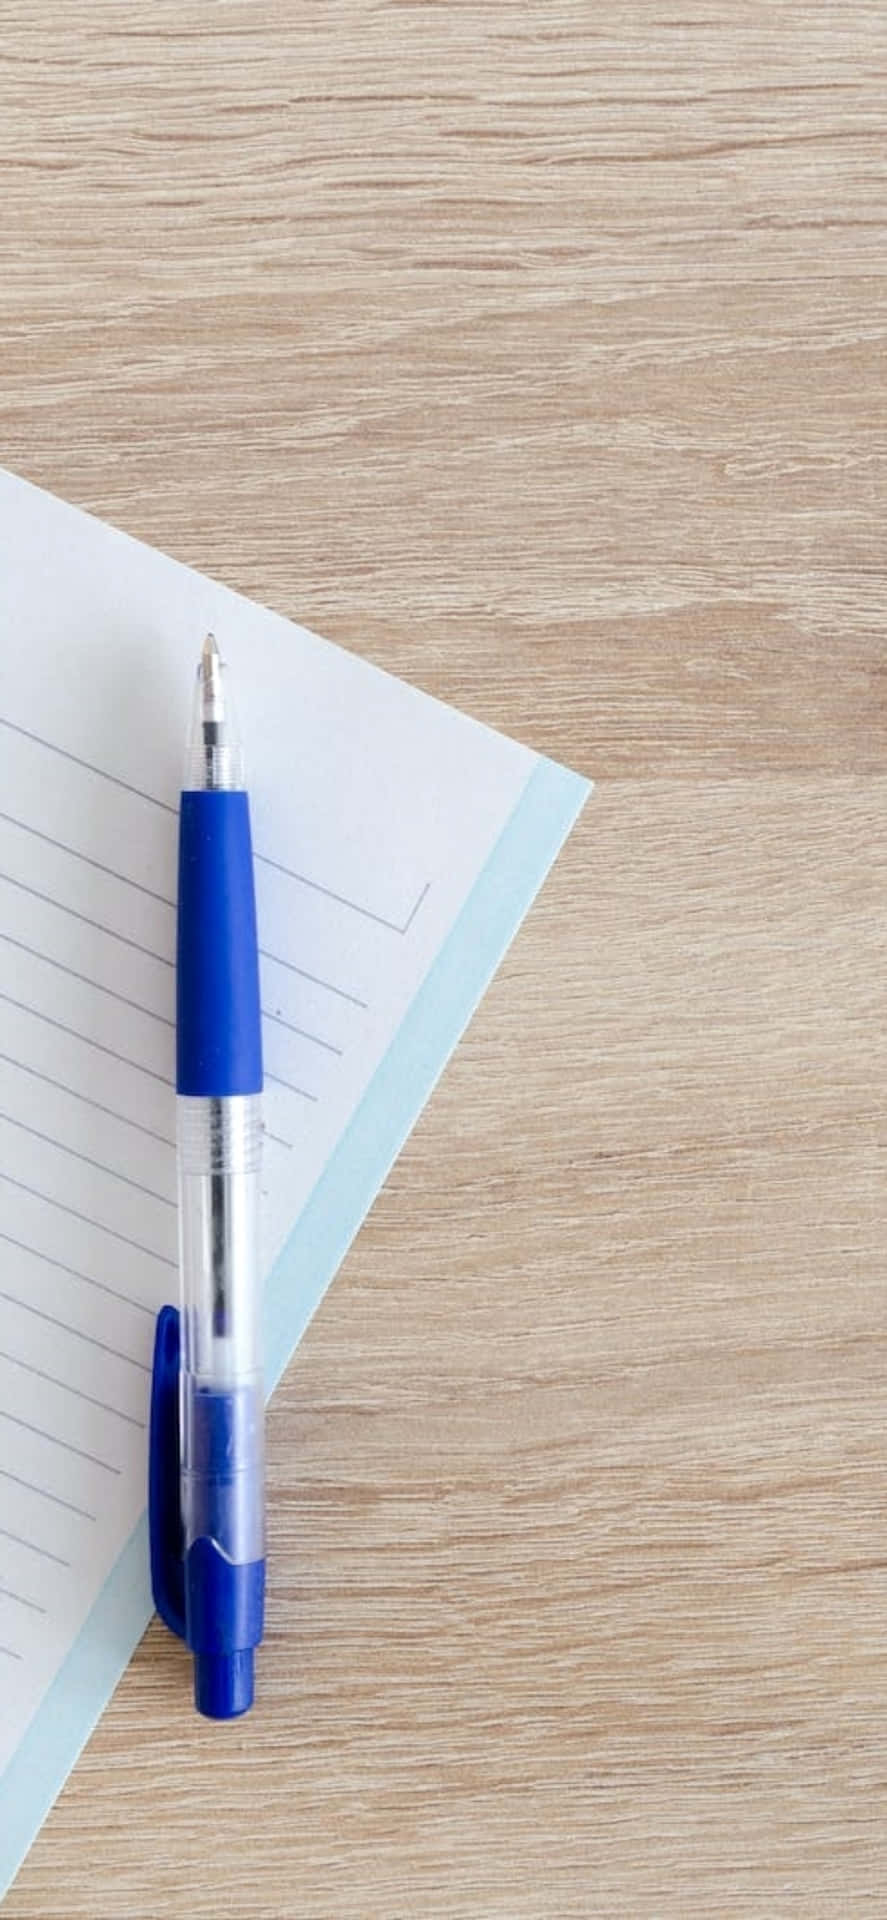 Fondode Escritorio Para El Iphone X Con Un Bolígrafo Azul Y Un Cuaderno.